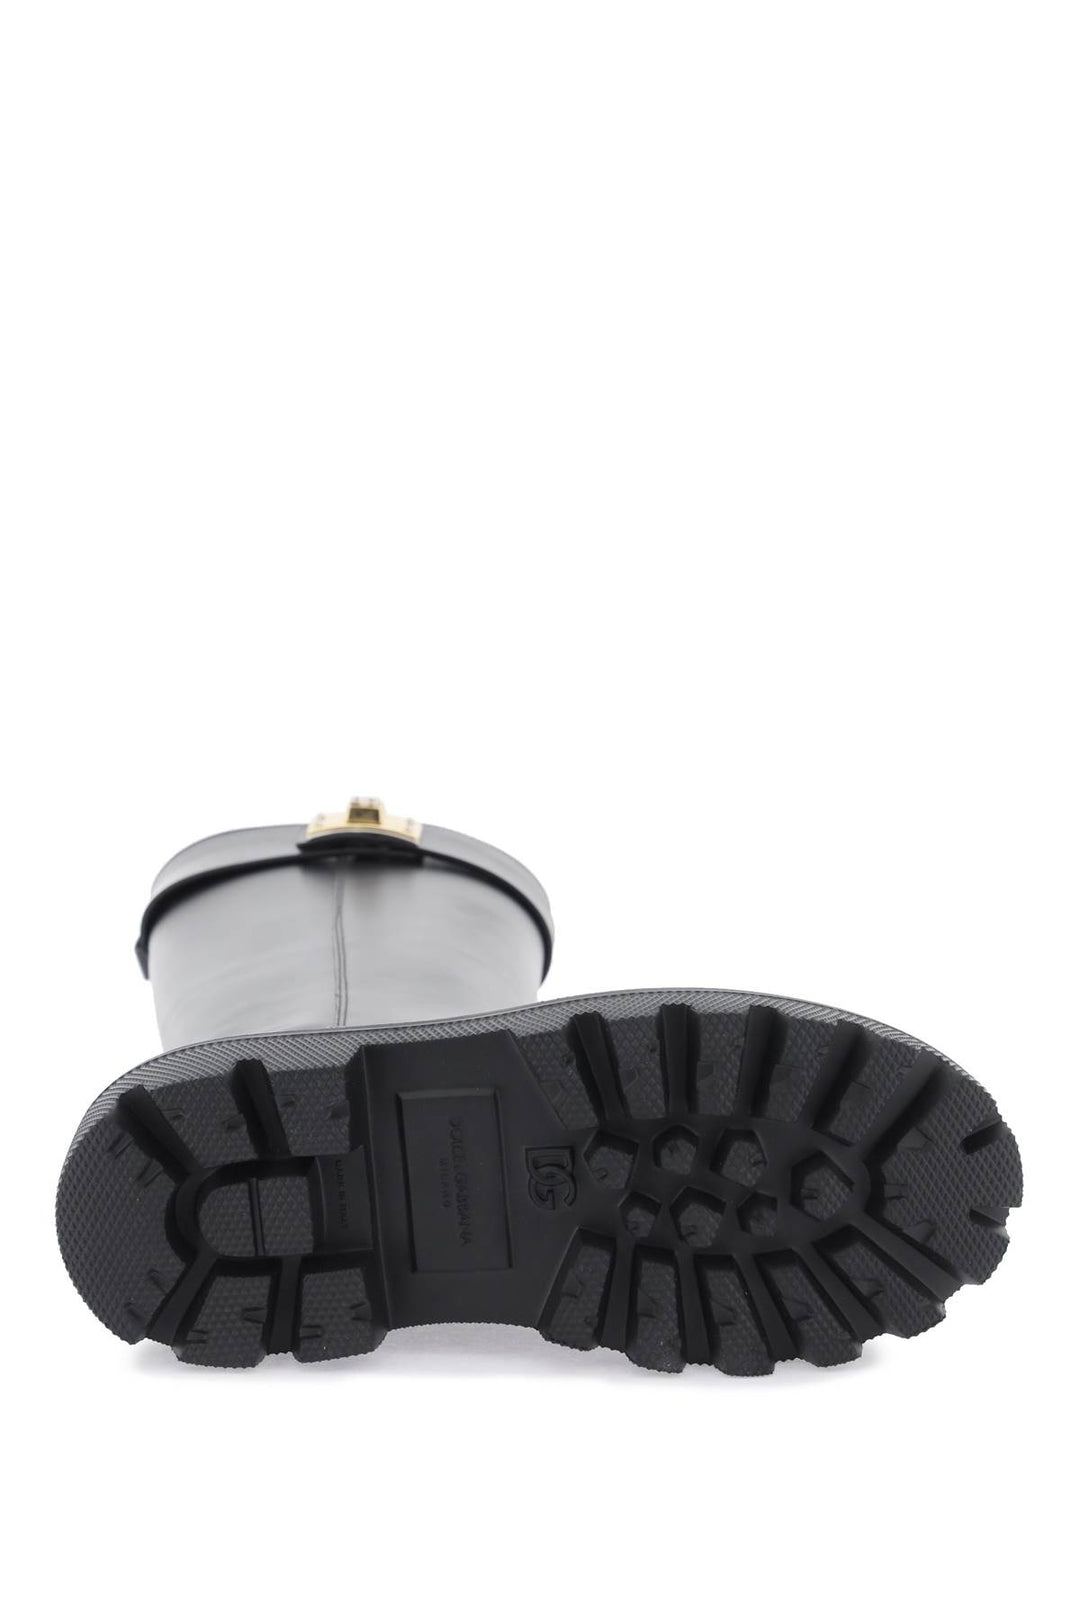 Stivali In Pelle Con Placca Logo - Dolce & Gabbana - Donna